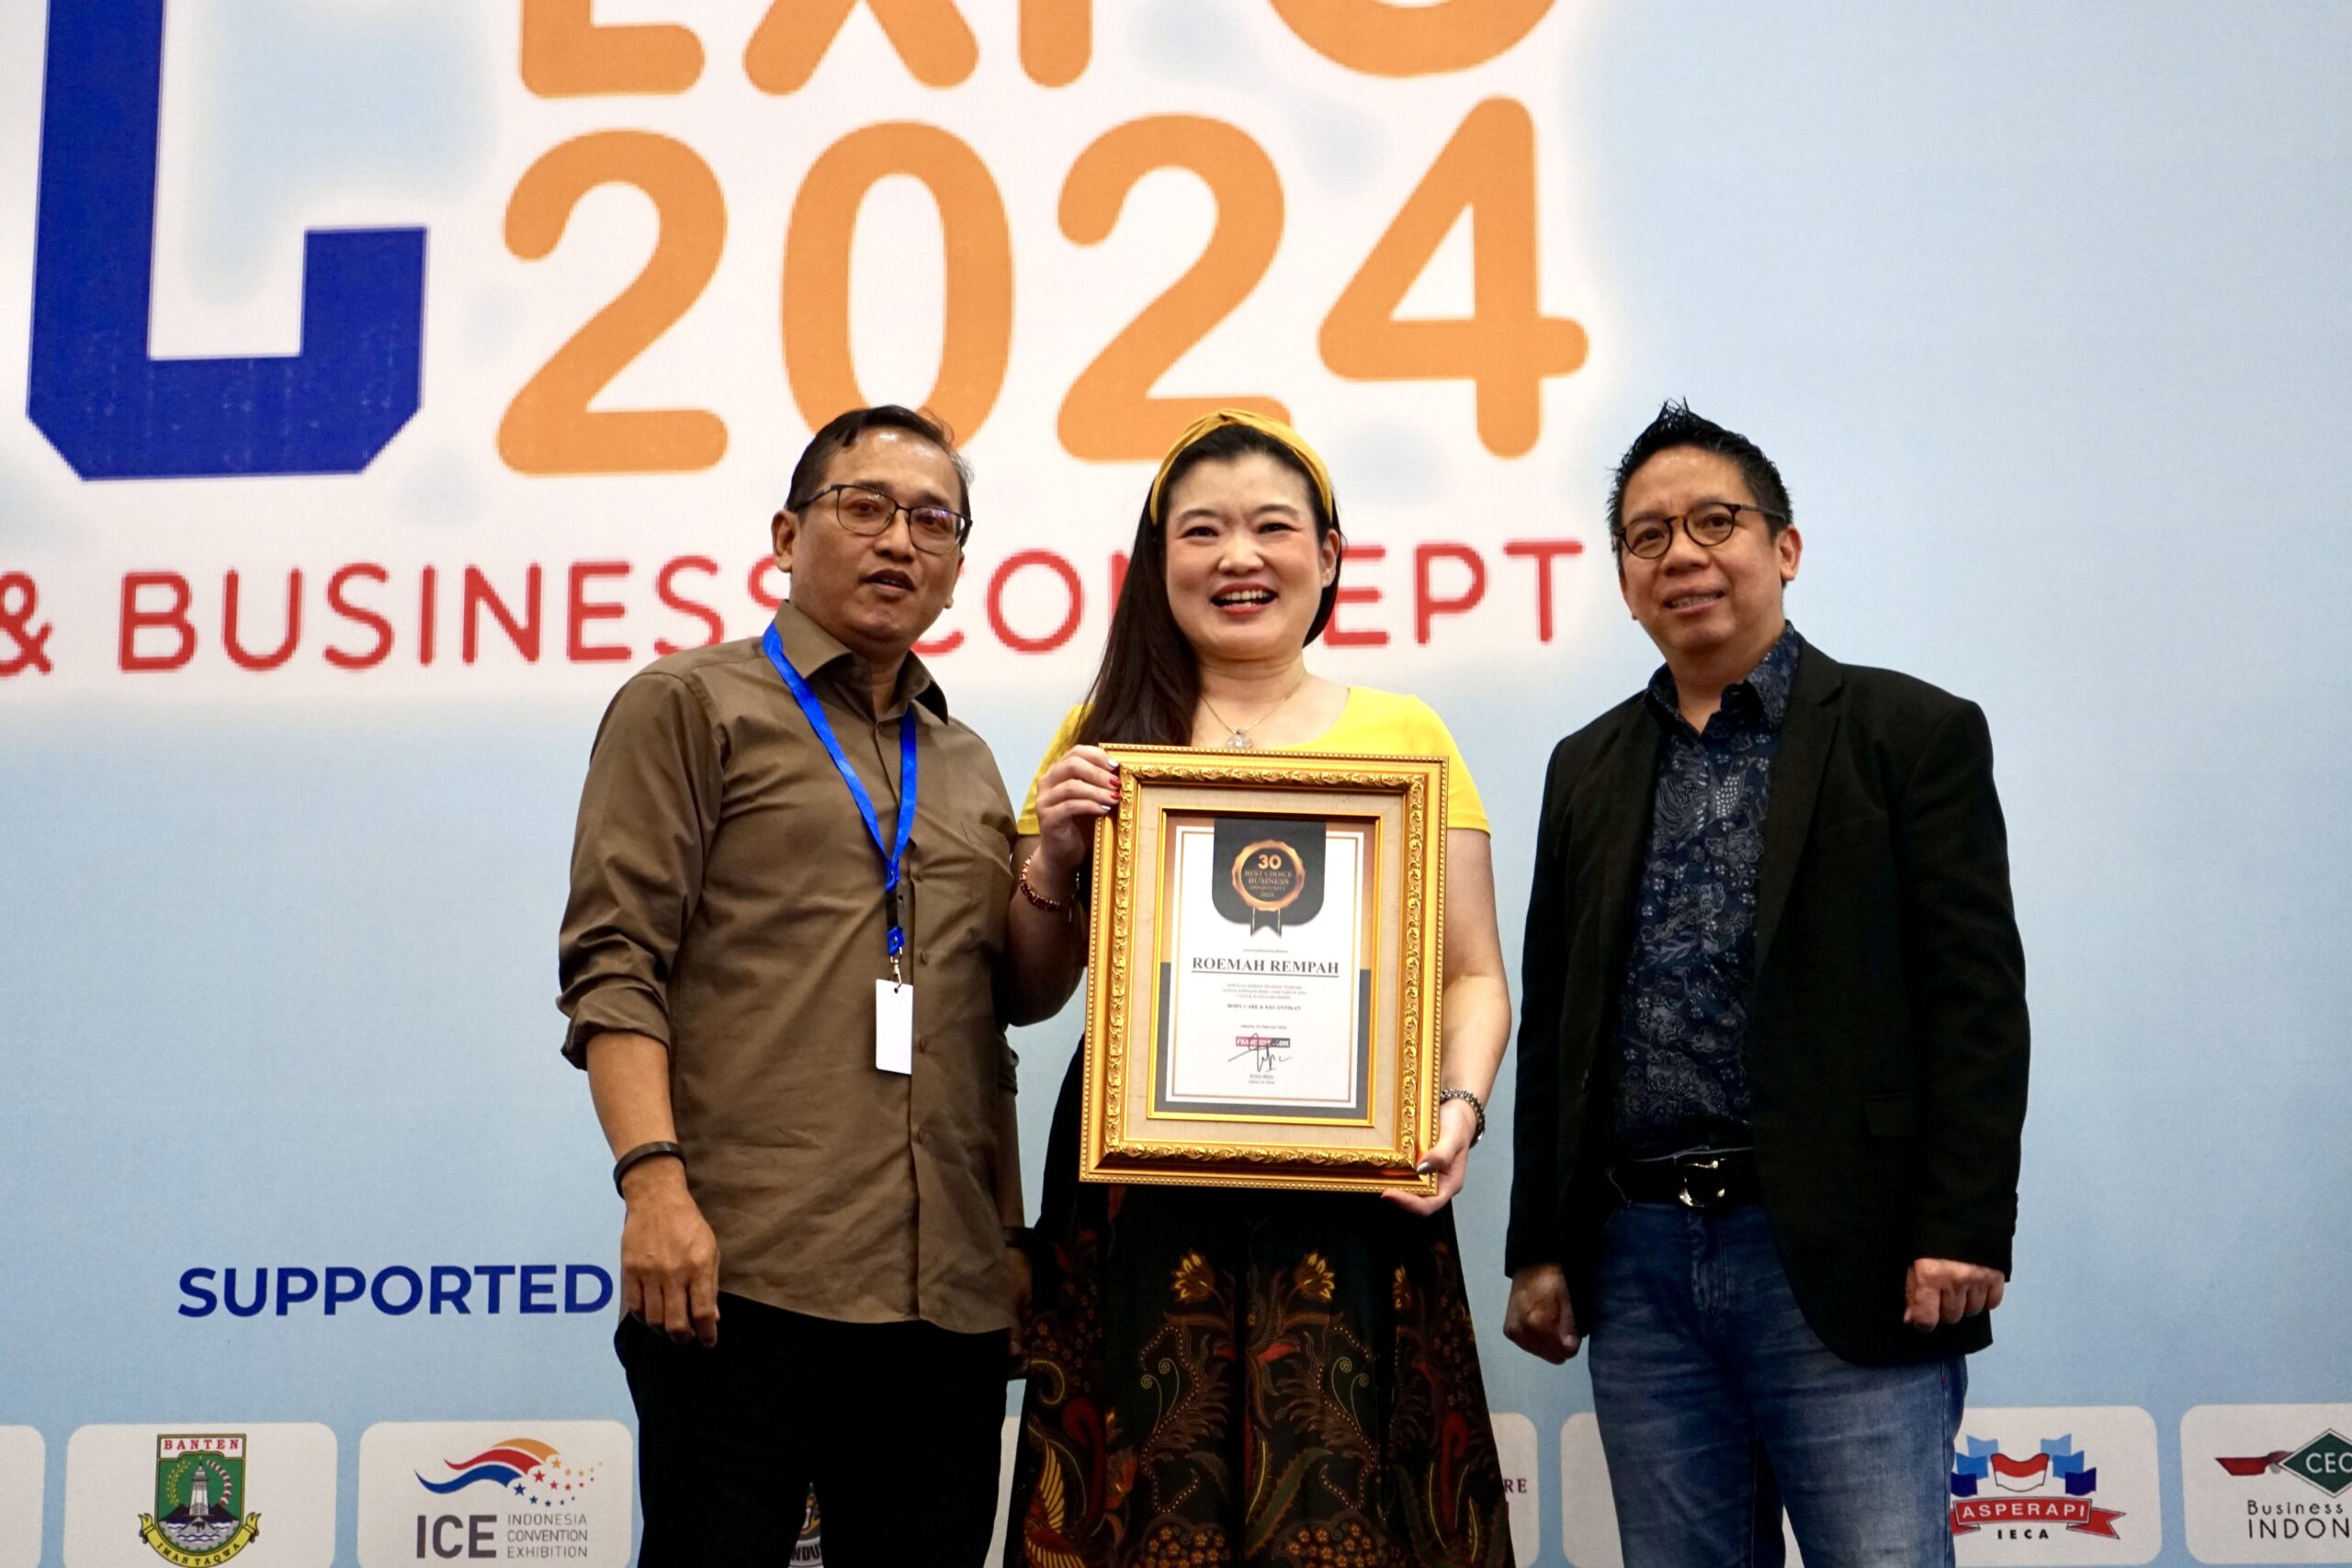 Roemah Rempah Masuk Dalam 30 Best Choice Business Opportunity 2024 dari Asosiasi Franchise Indonesia